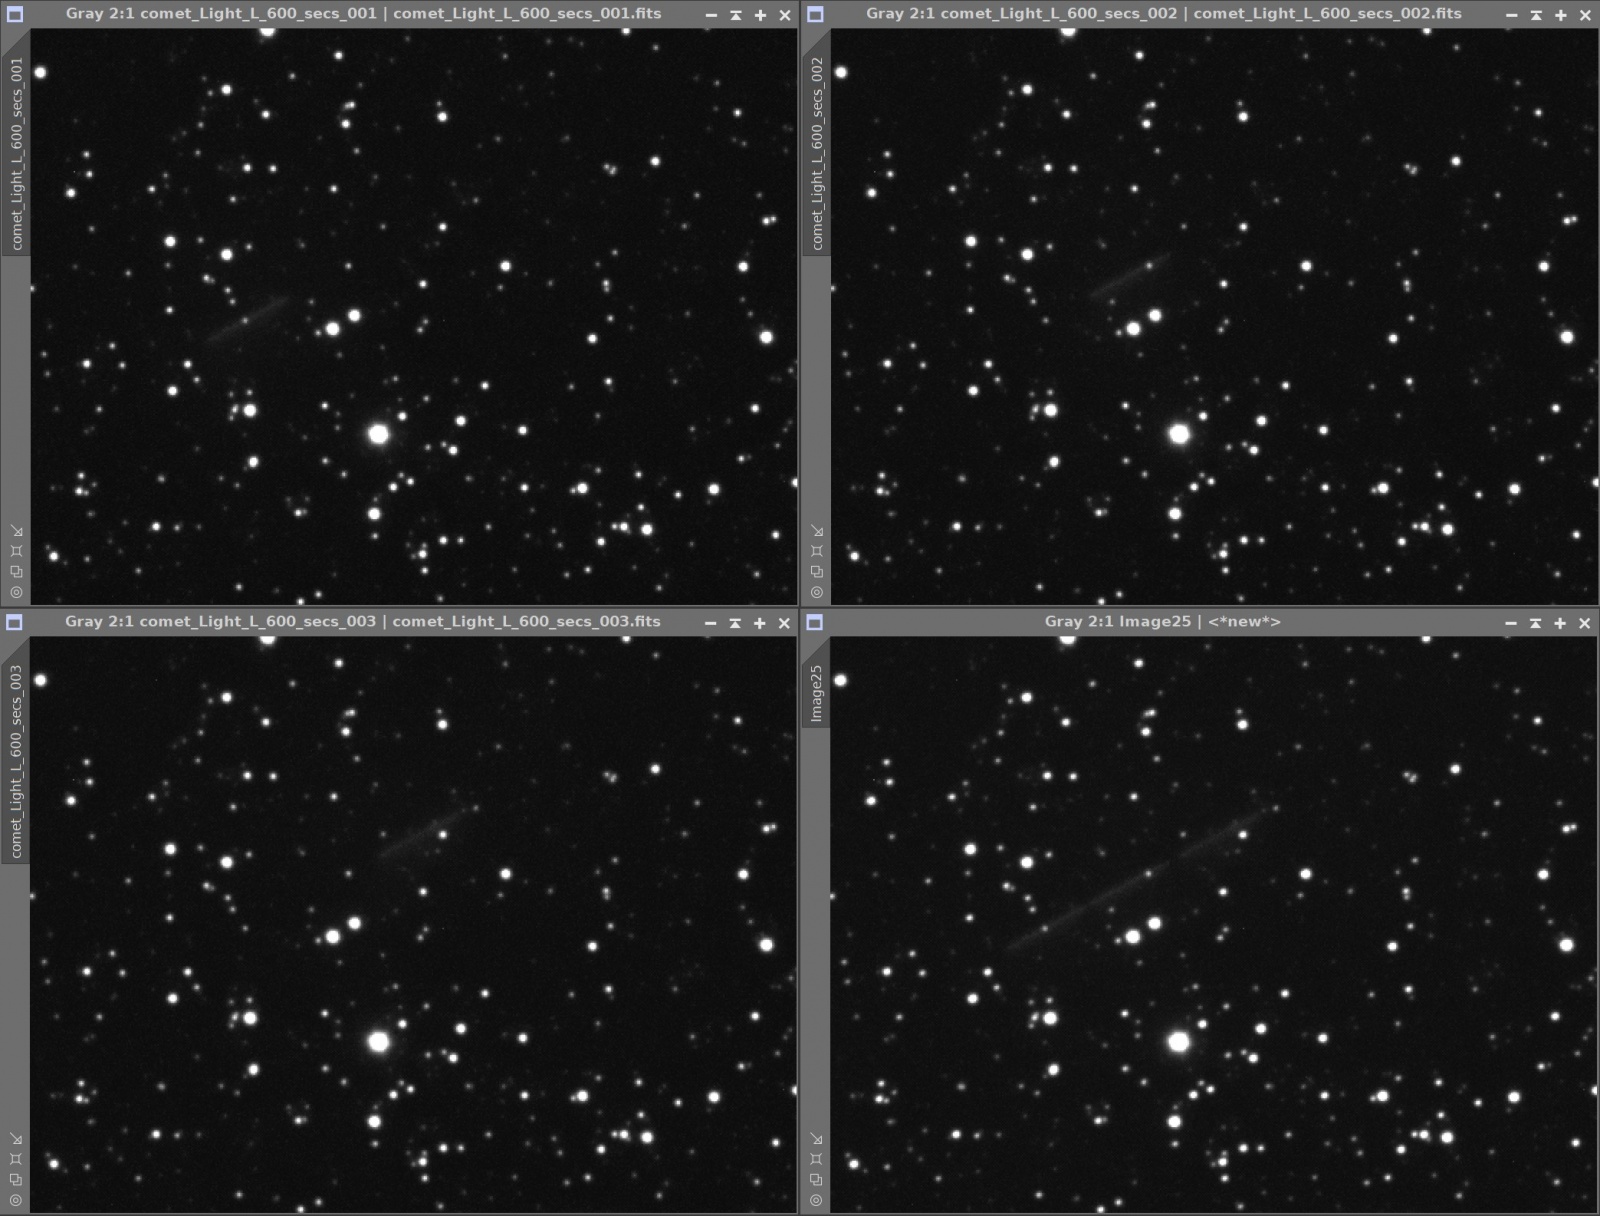 C_2021_A4_NEOWISE_mosaic.thumb.jpg.2d1b4827e1a56dbf8b9c4abc25c0fe91.jpg